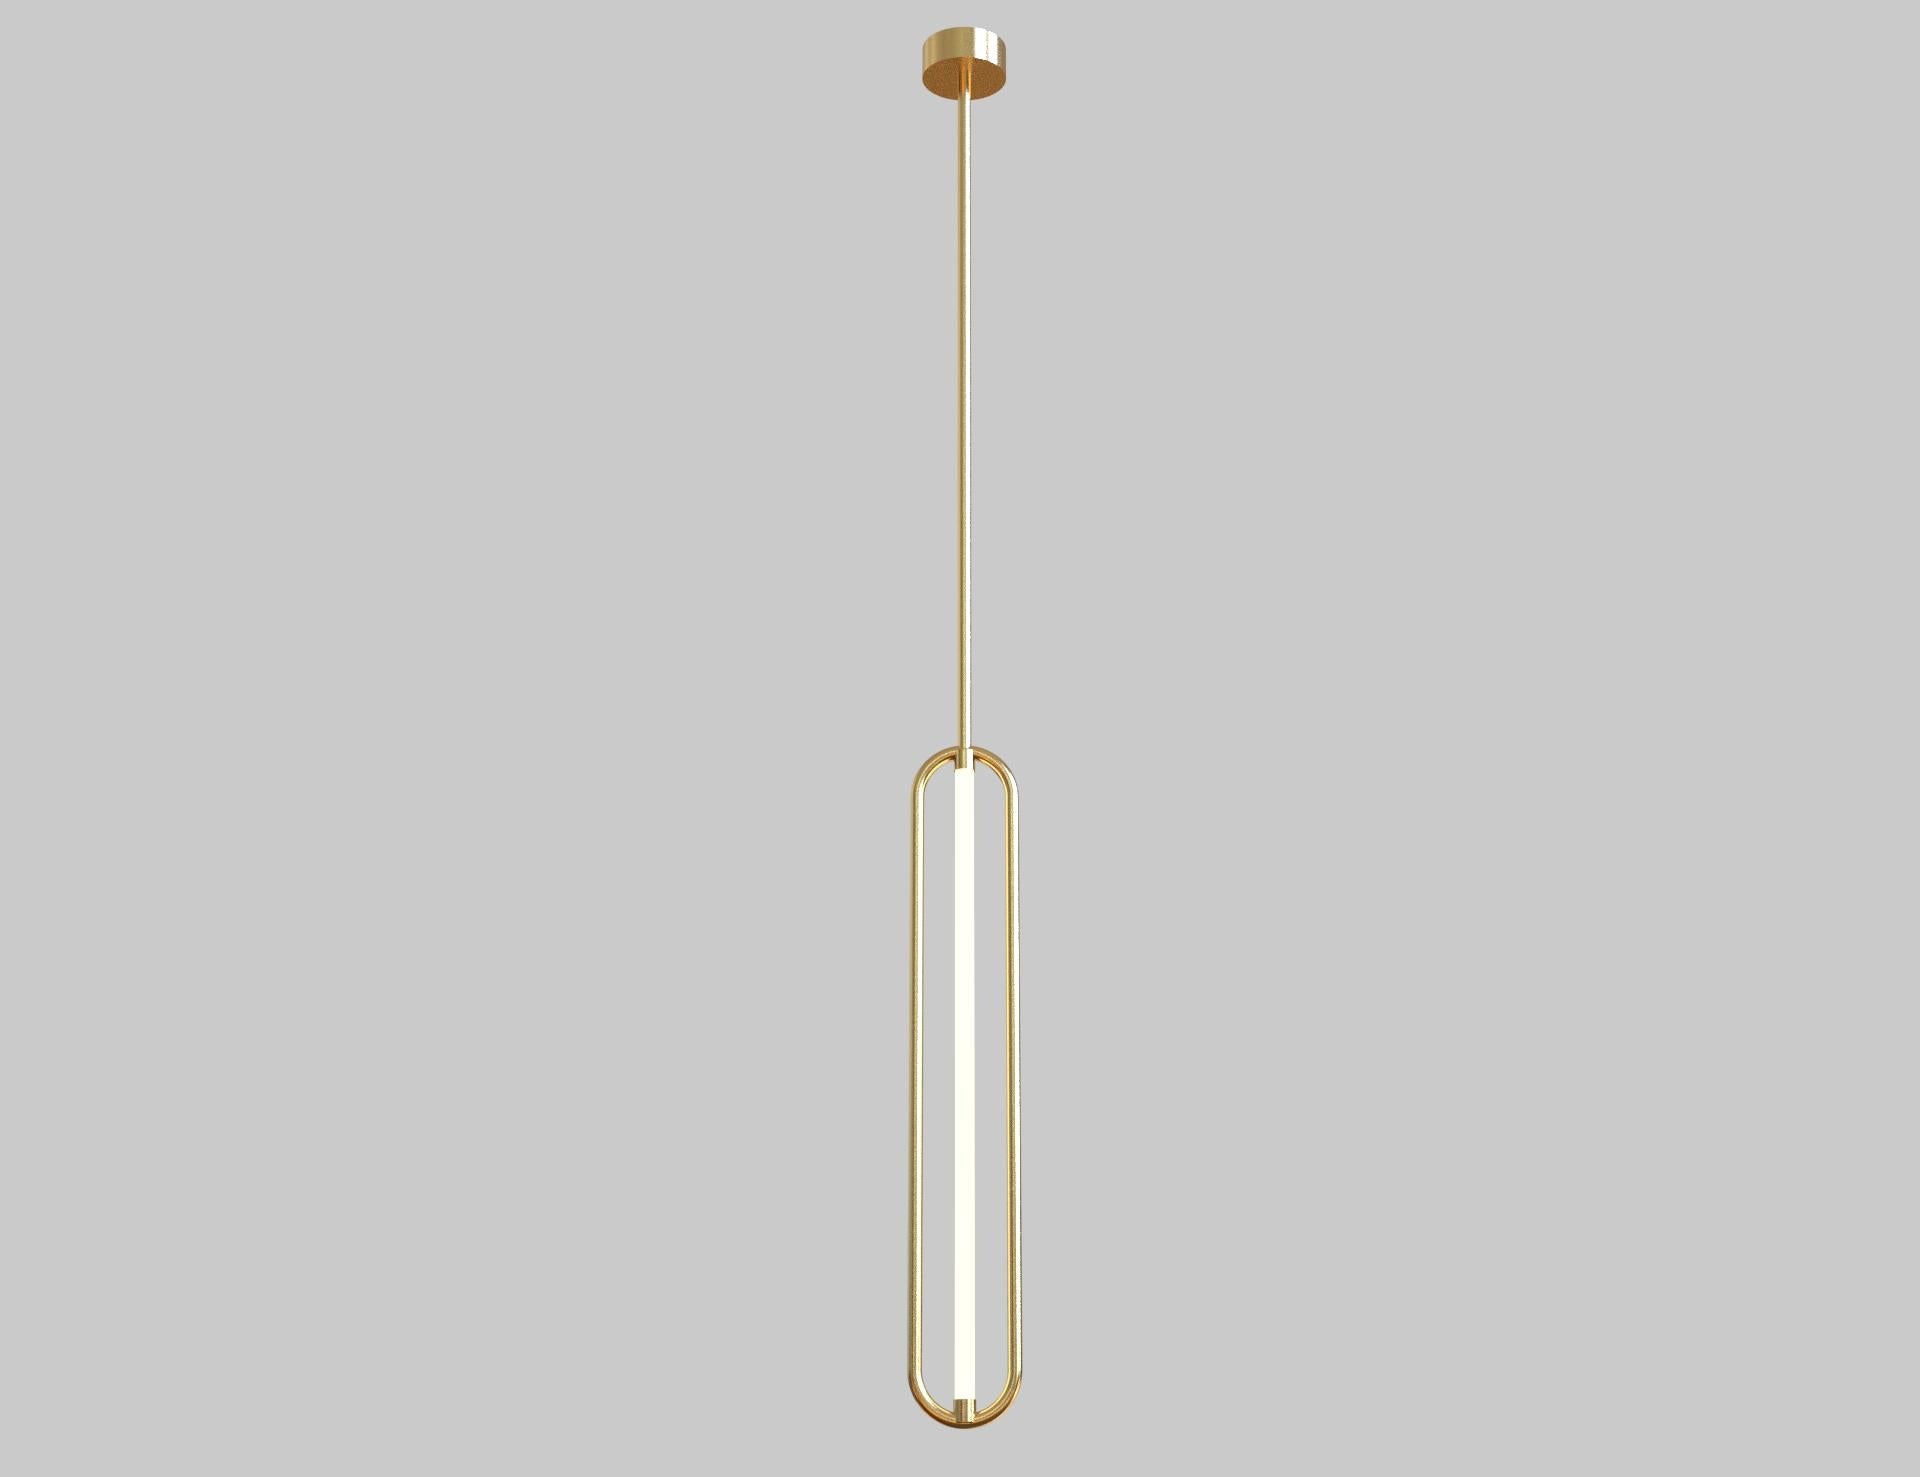 La série de lampes Looping de la collection Bauhaus est constituée de lampes minimales et élégantes adaptées à l'esthétique résidentielle, commerciale ou industrielle, inspirées par les maillons élancés des chaînes. Le cadre de la lampe est en